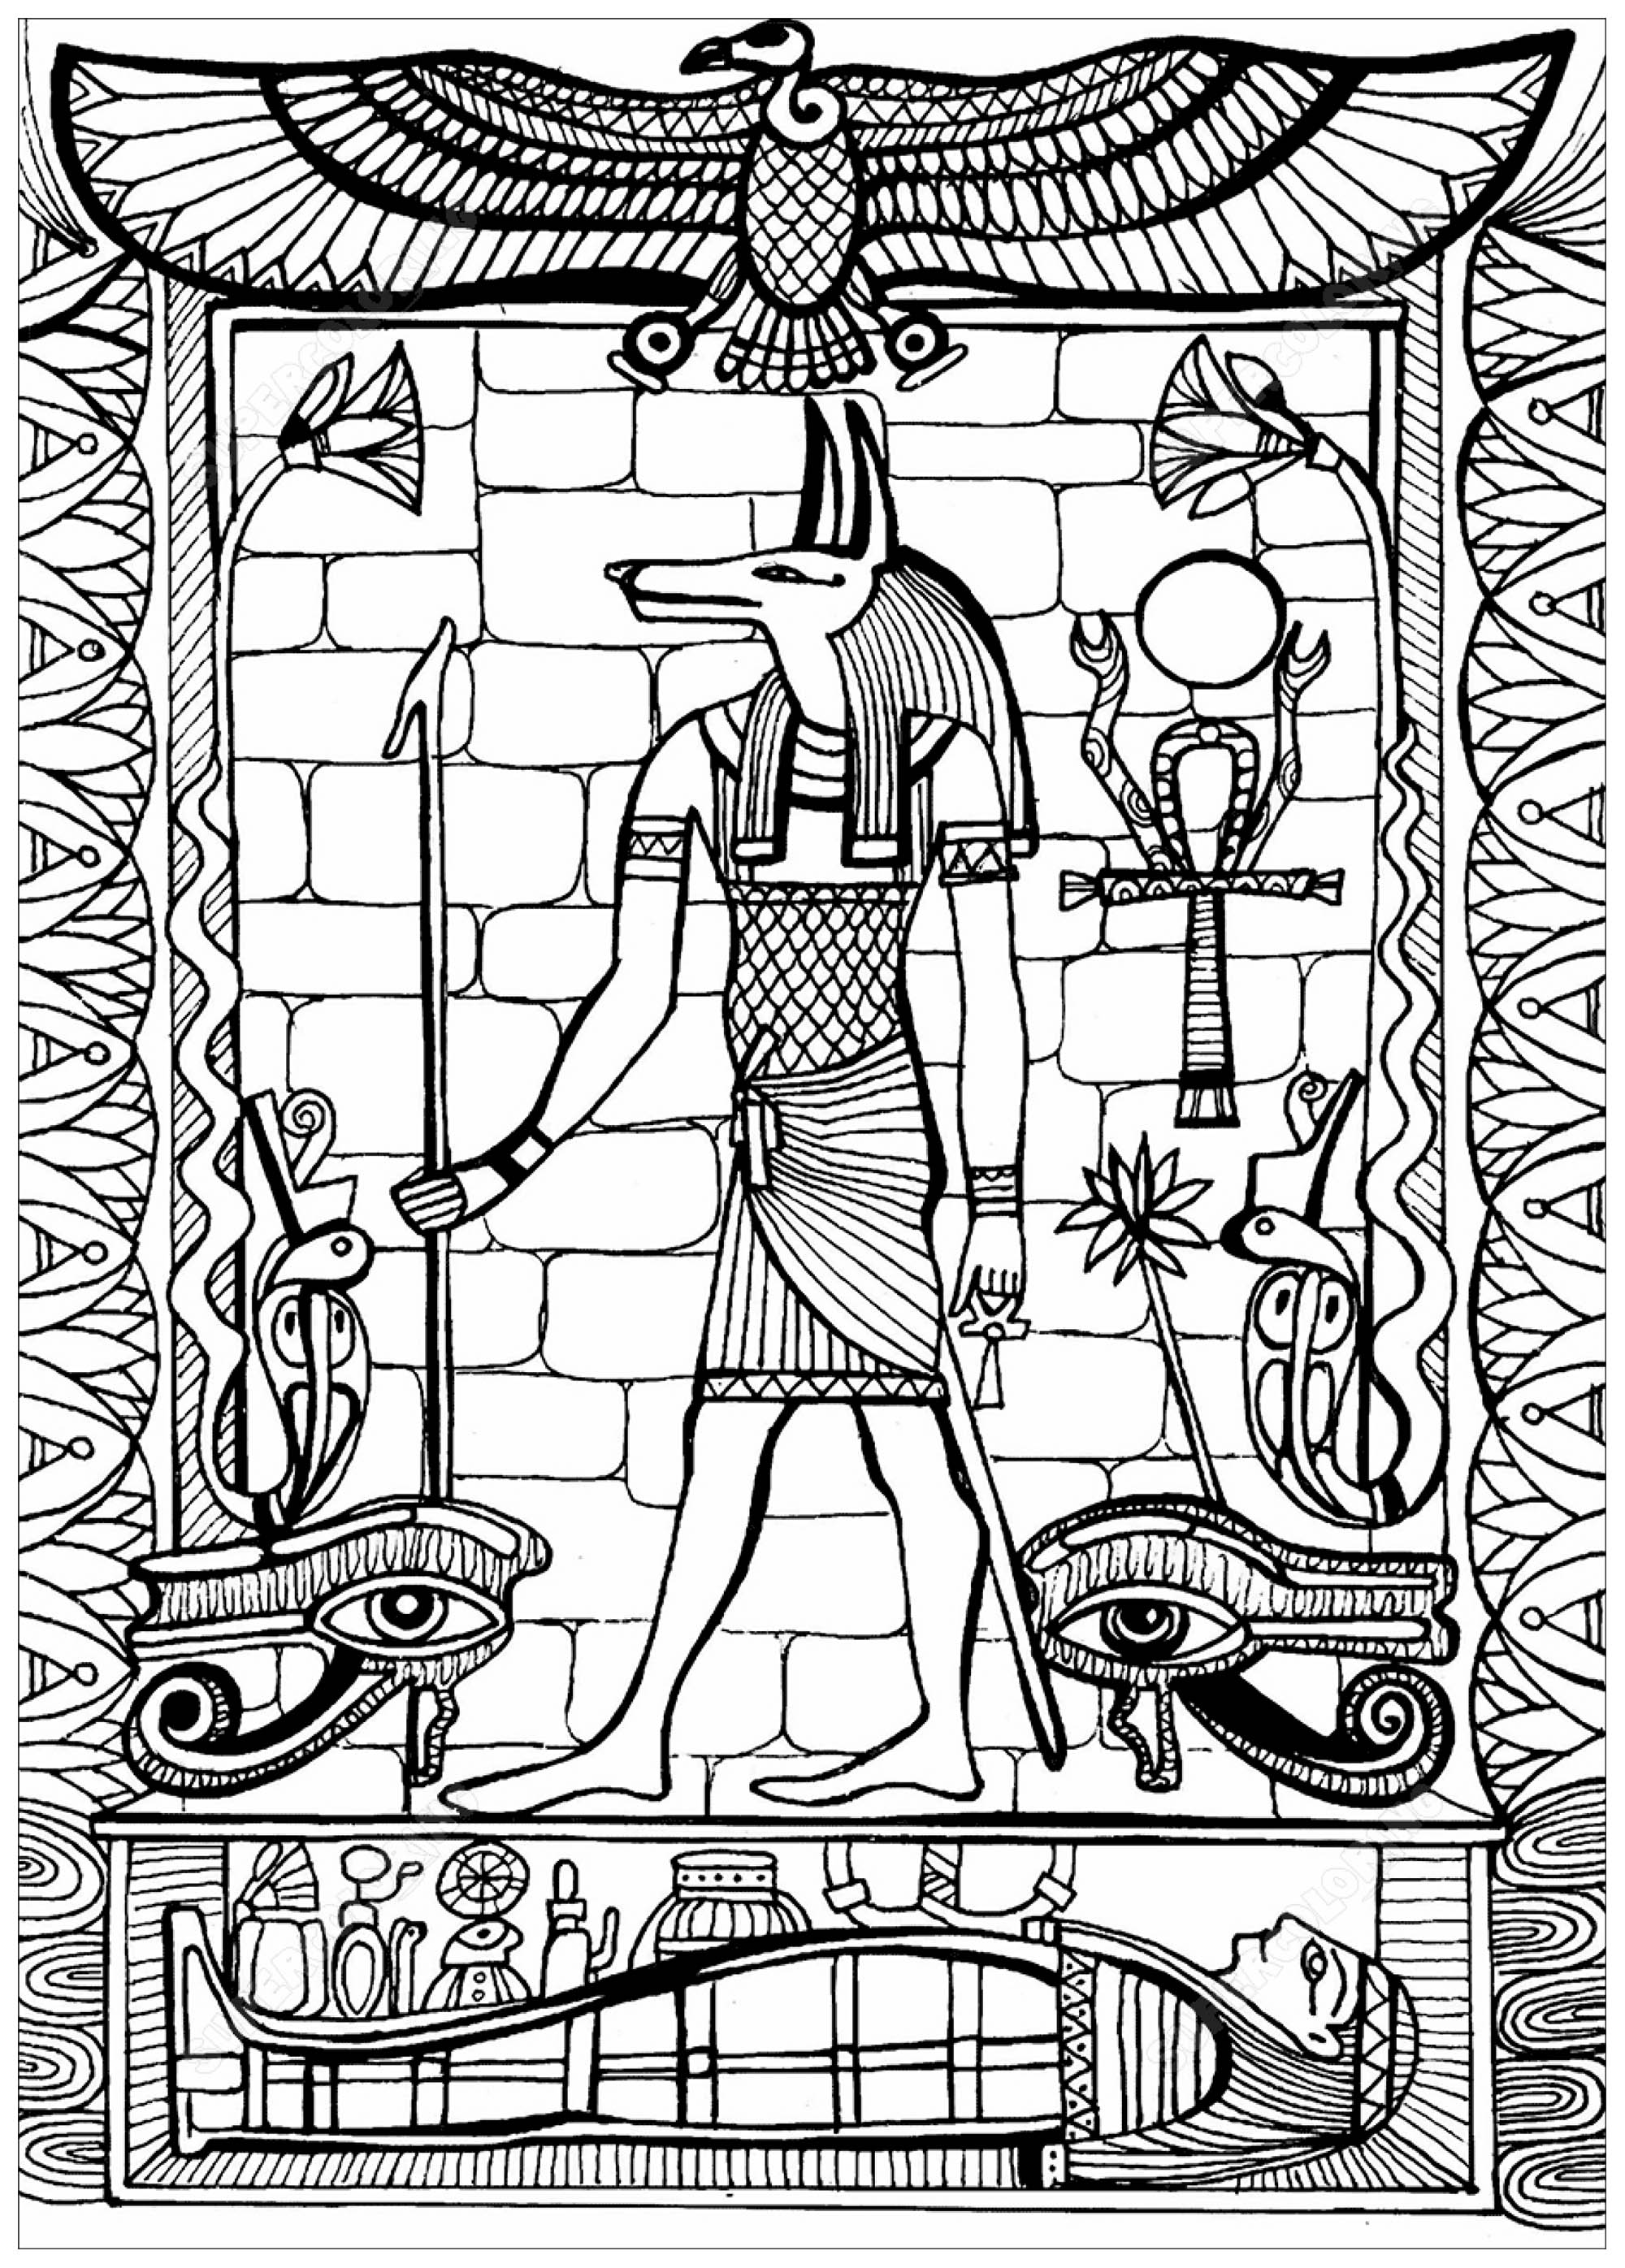 Anubis, dios asociado al más allá en la antigua religión egipcia, generalmente representado como un canino